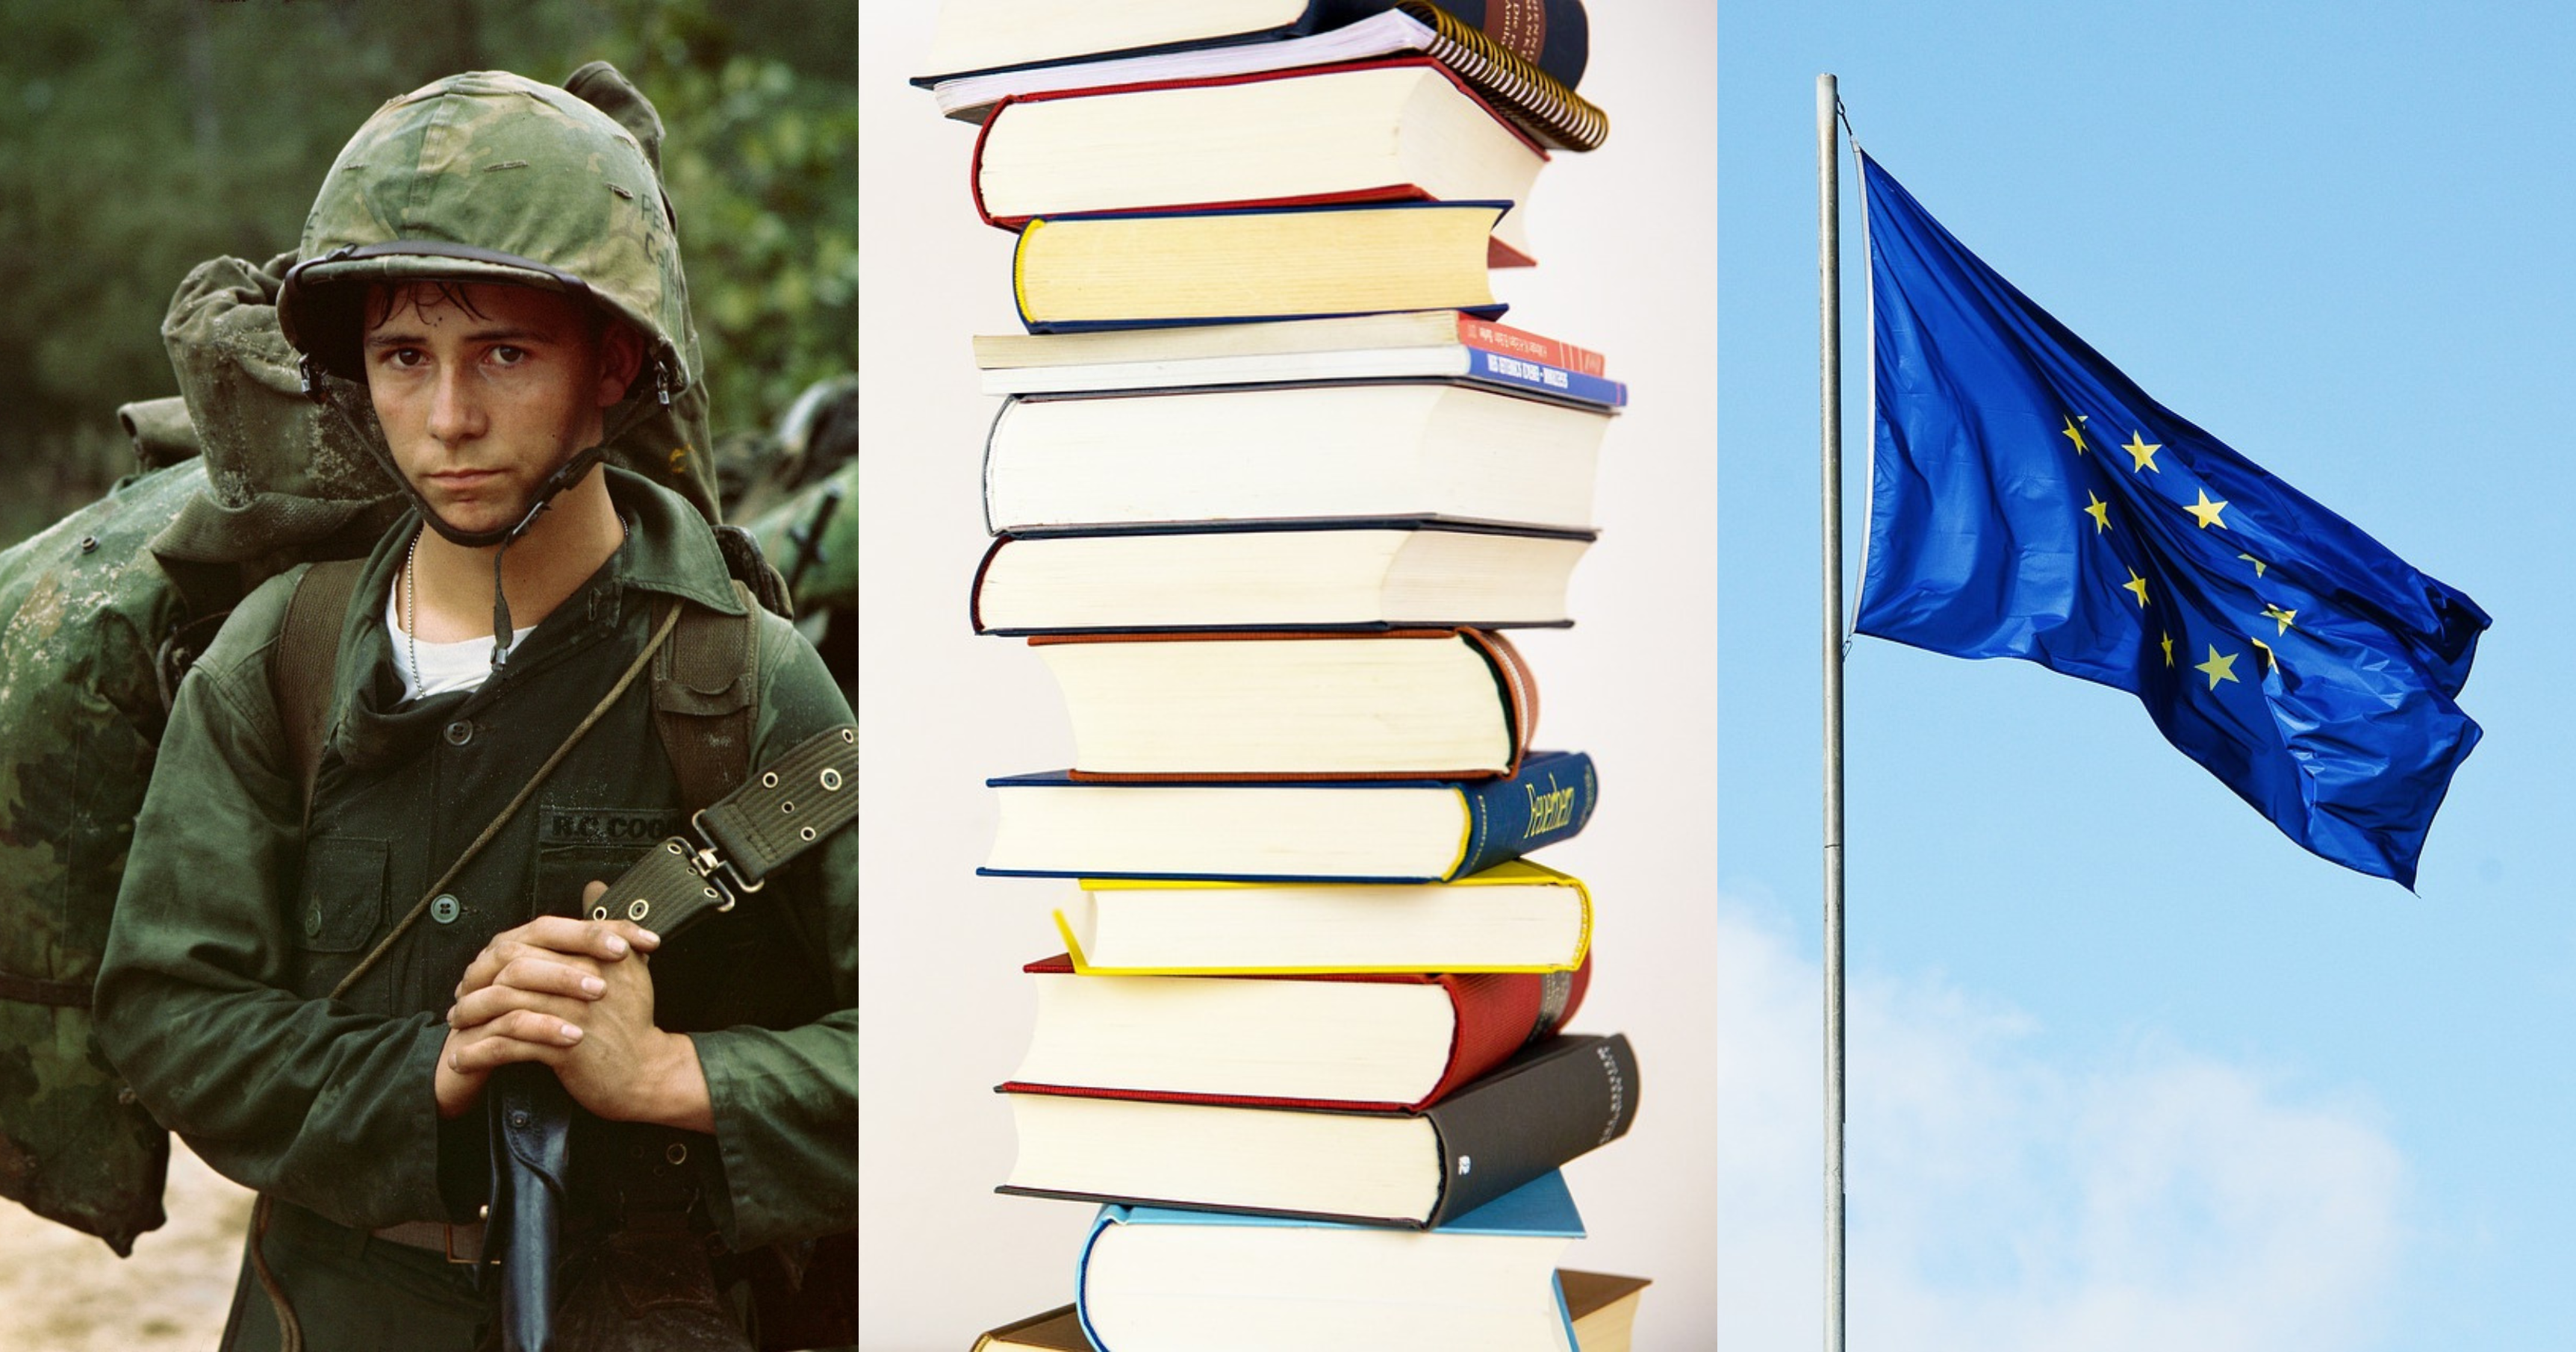 Młody chłopiec ubrany w morowy strój wojenny, stos książek i flaga Unii Europejskiej